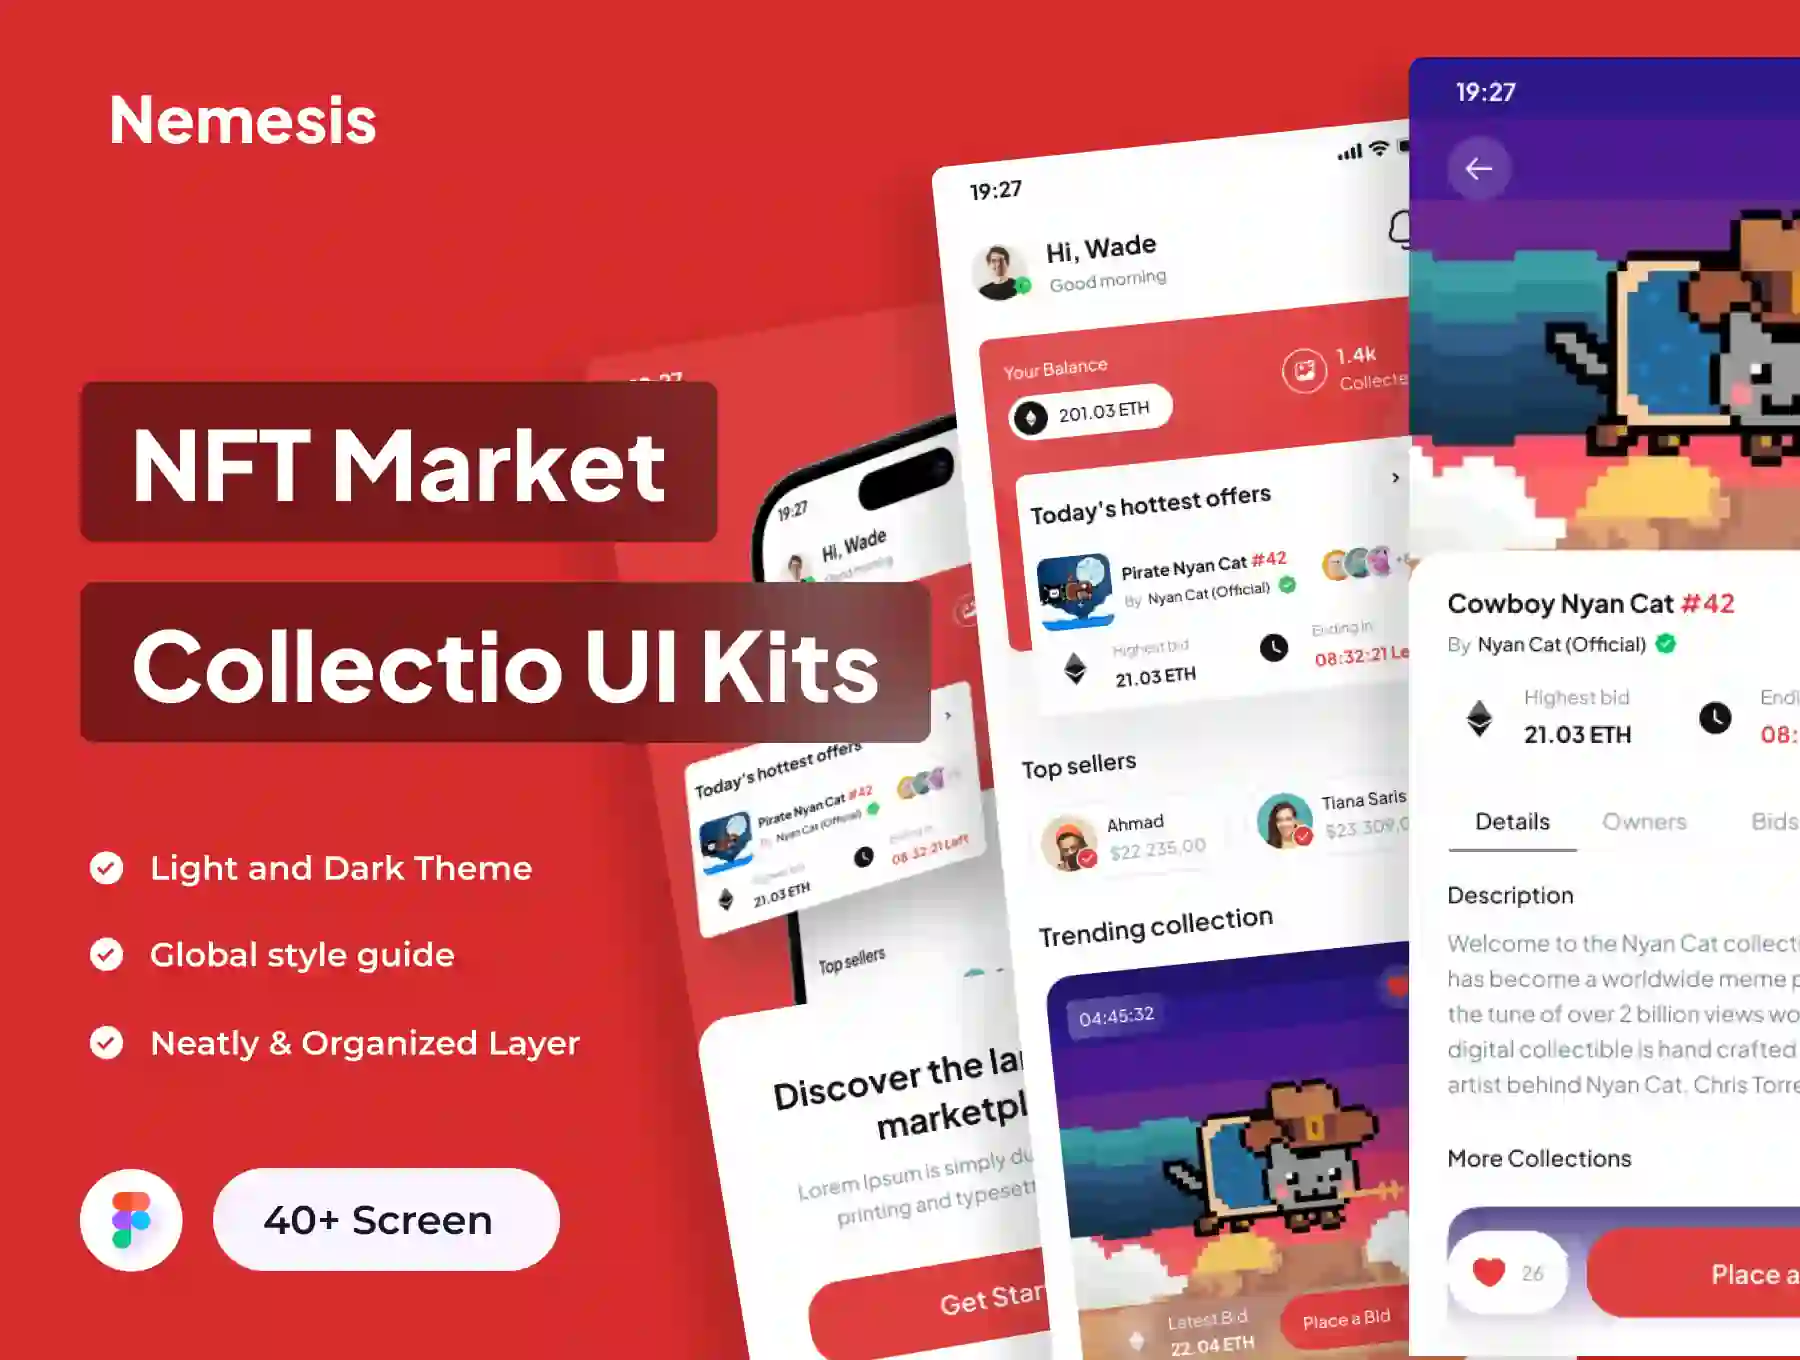 Nemesis - NFT Market Collection Apps UI Kits